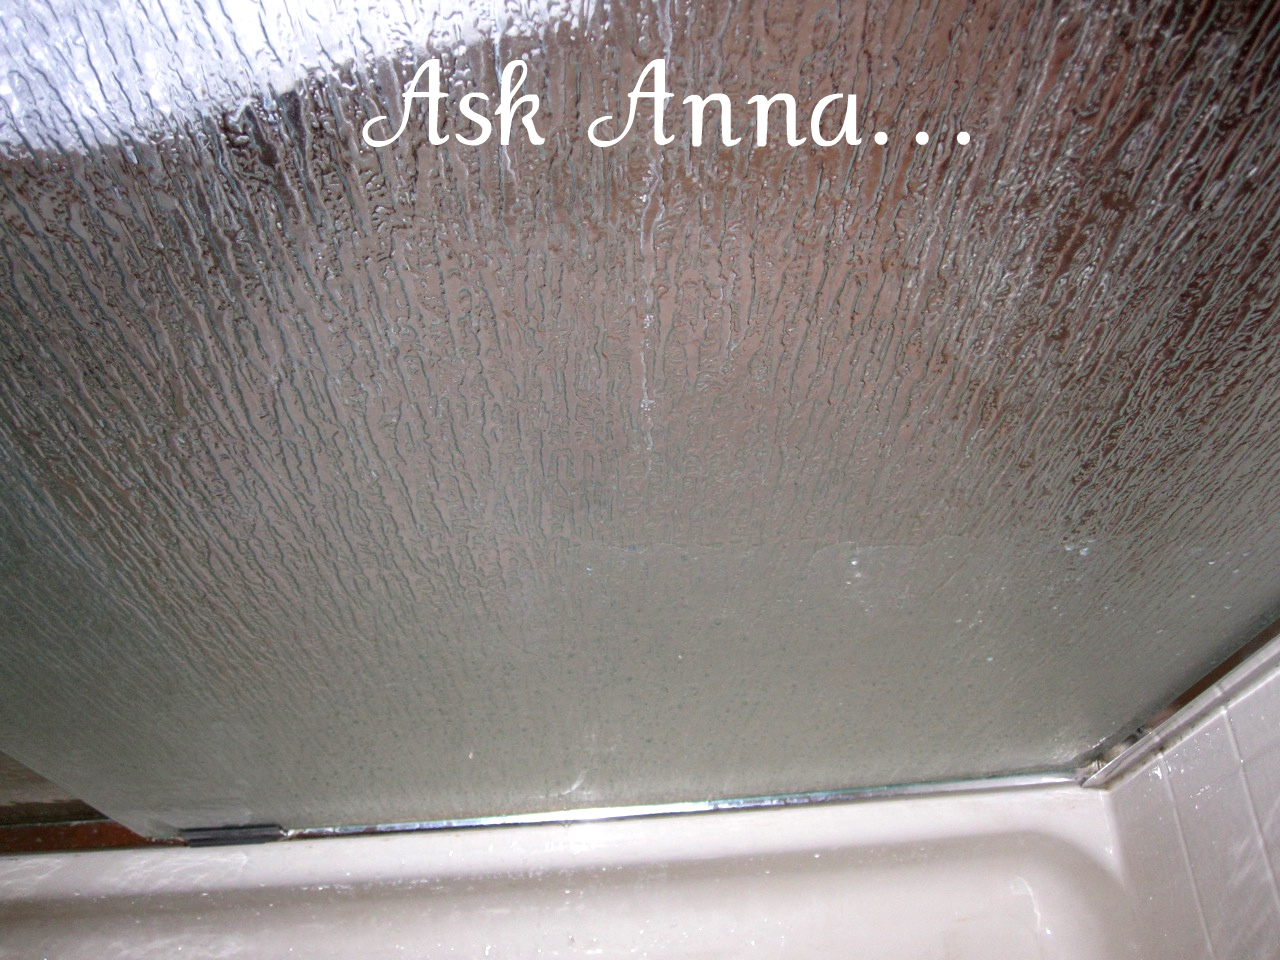 How to Clean Shower Door Soap Scum {Please Help Me!} - Ask ...